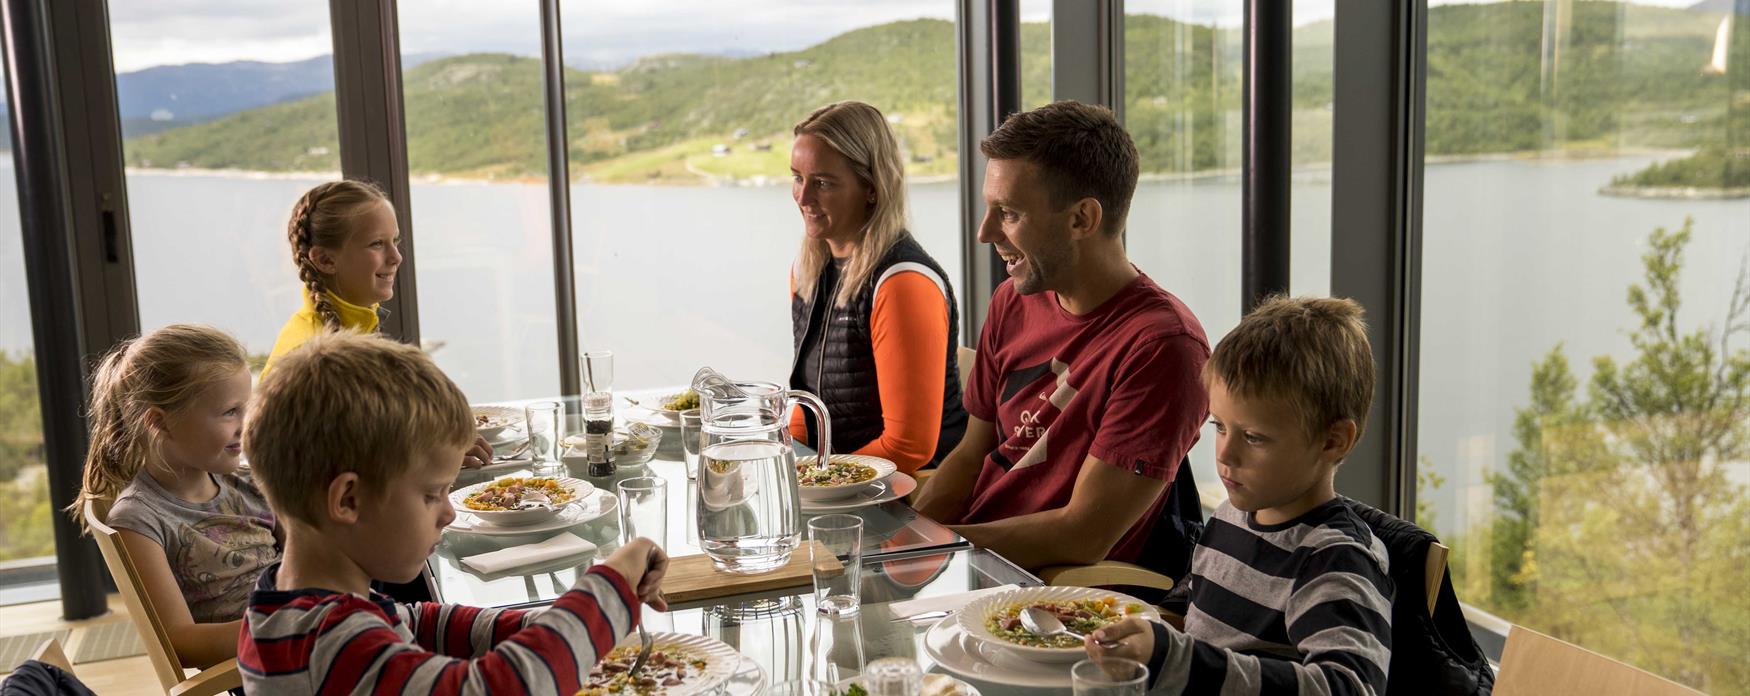 Kafe med utsikt på Hardangervidda Nasjonalparksenter